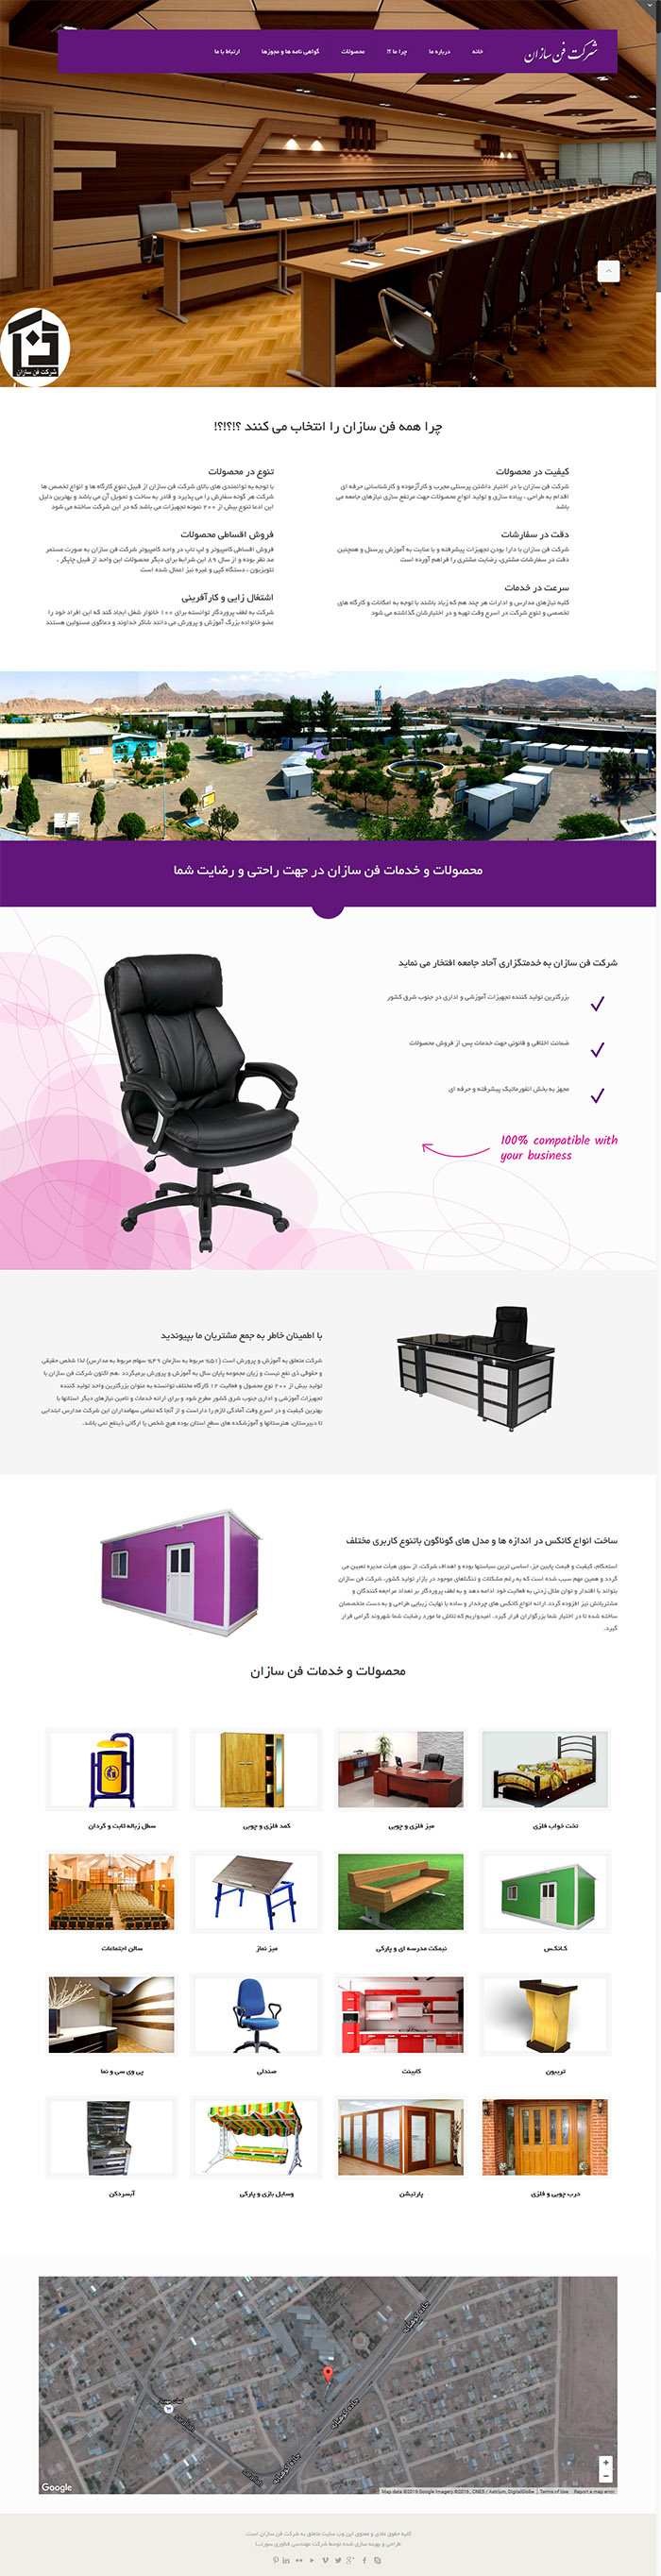 طراحی سایت شرکت فن سازان توسط شرکت طراحی سایت سورنا در کرمان